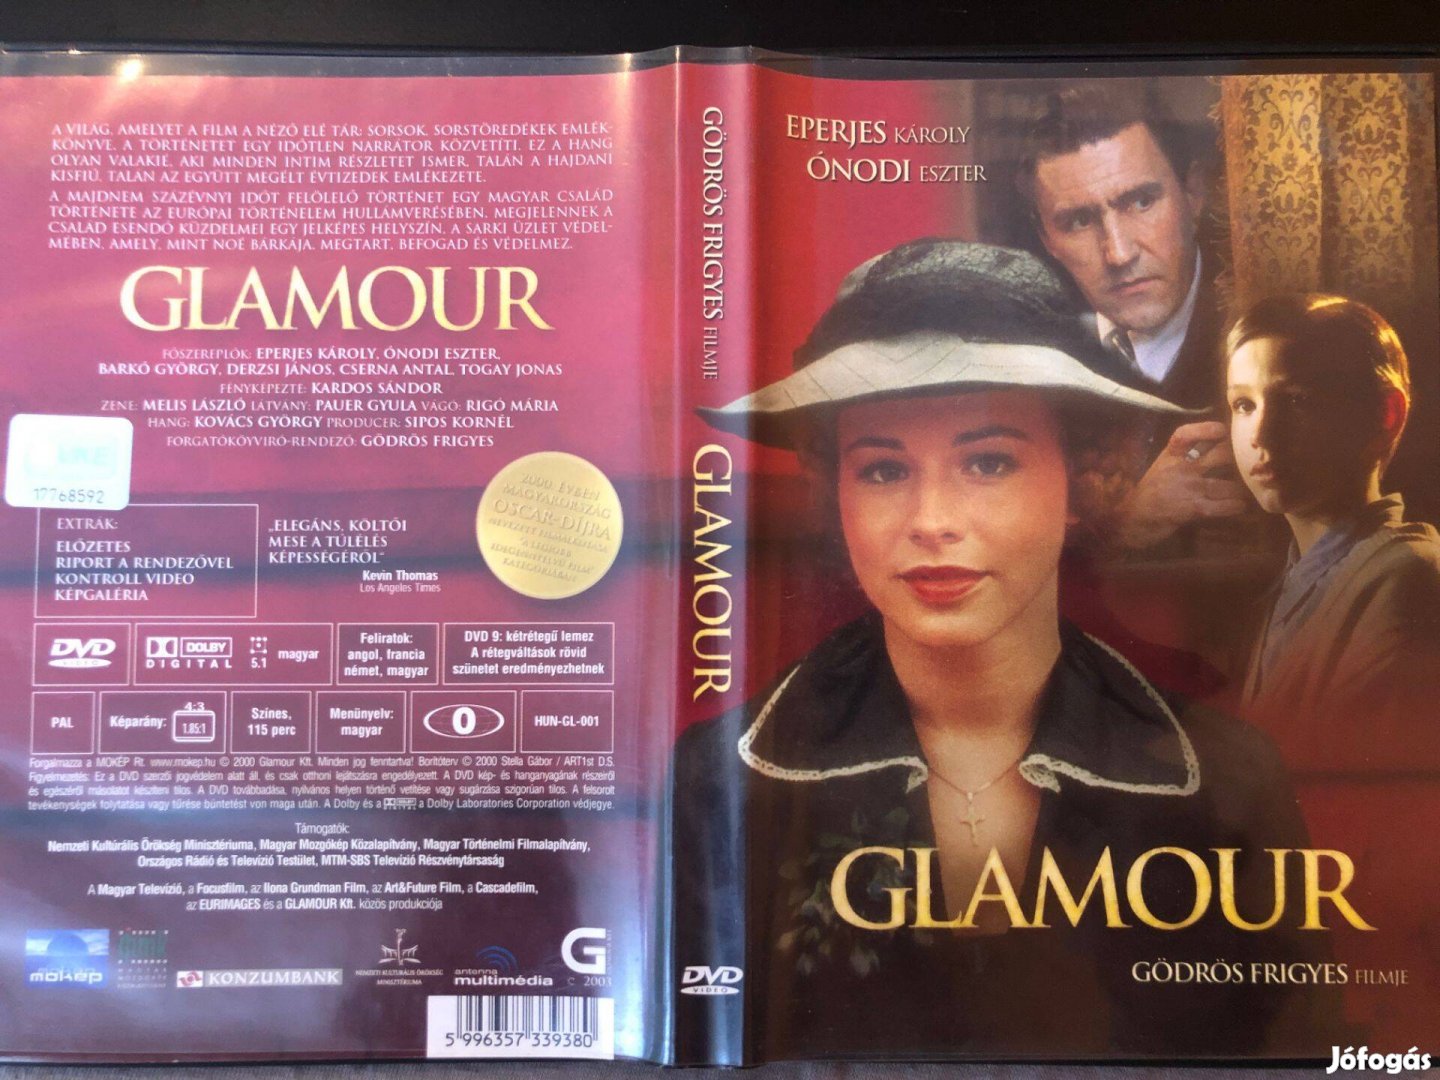 Glamour (karcmentes, Eperjes Károly) DVD